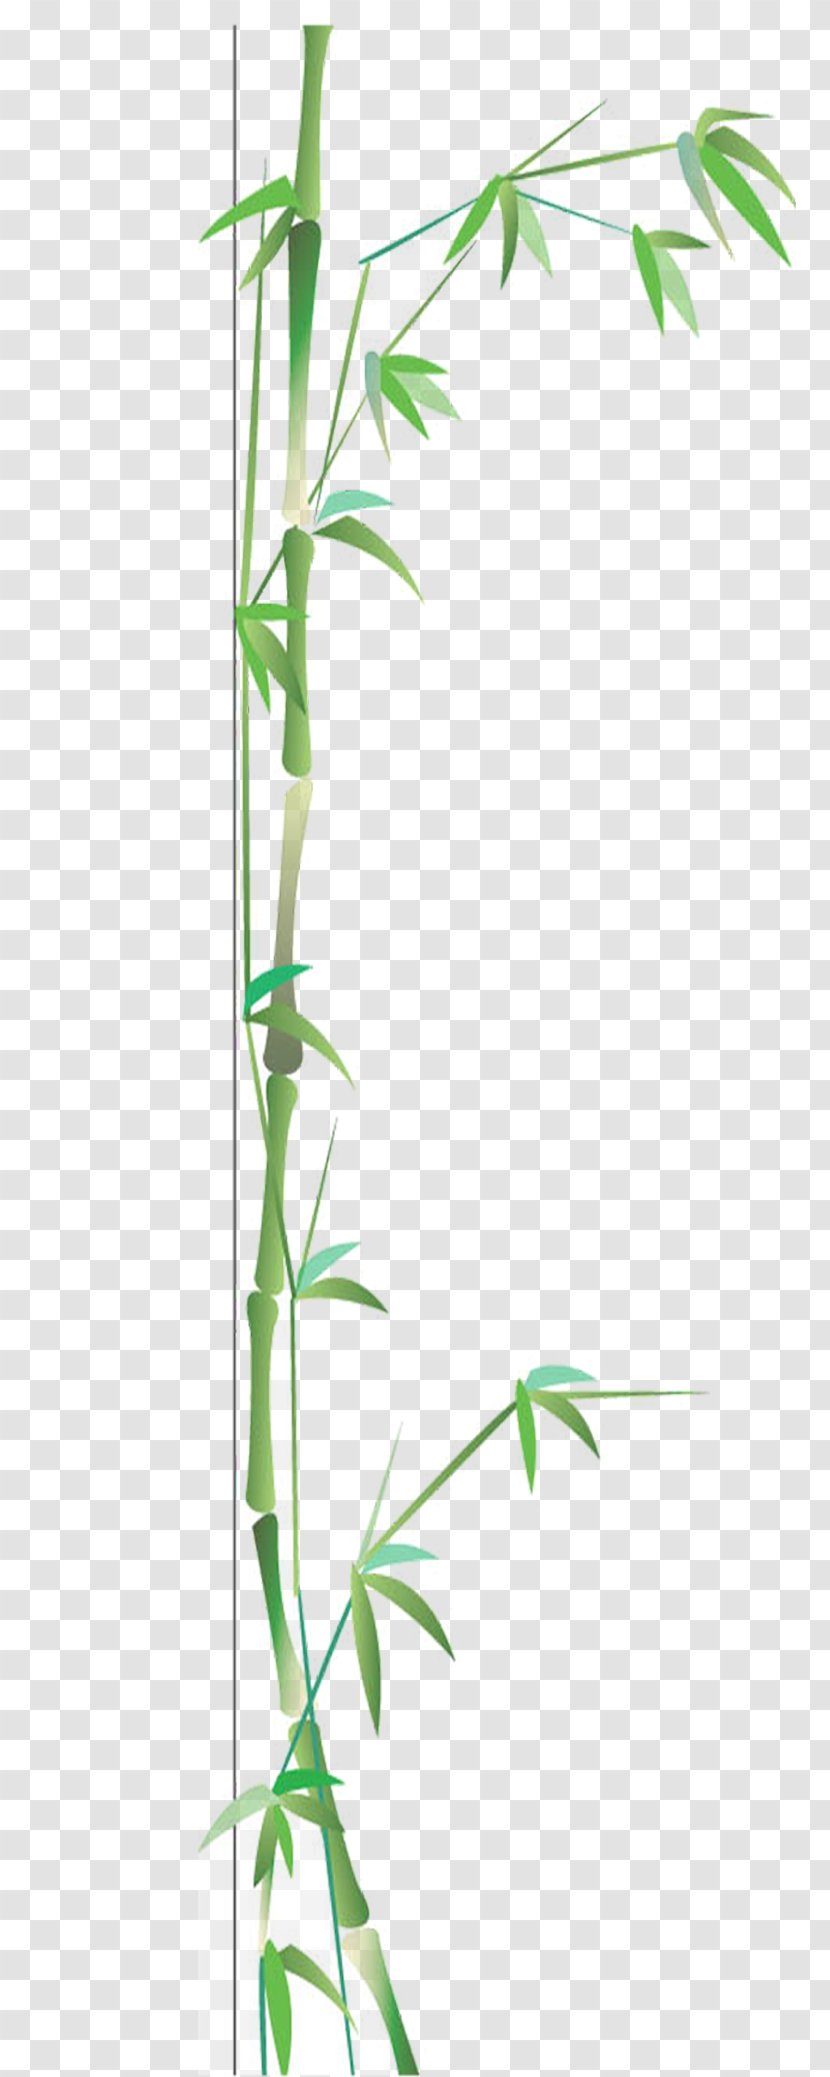 Bamboo Bamboe Google Images Gratis - Grass - Green Transparent PNG